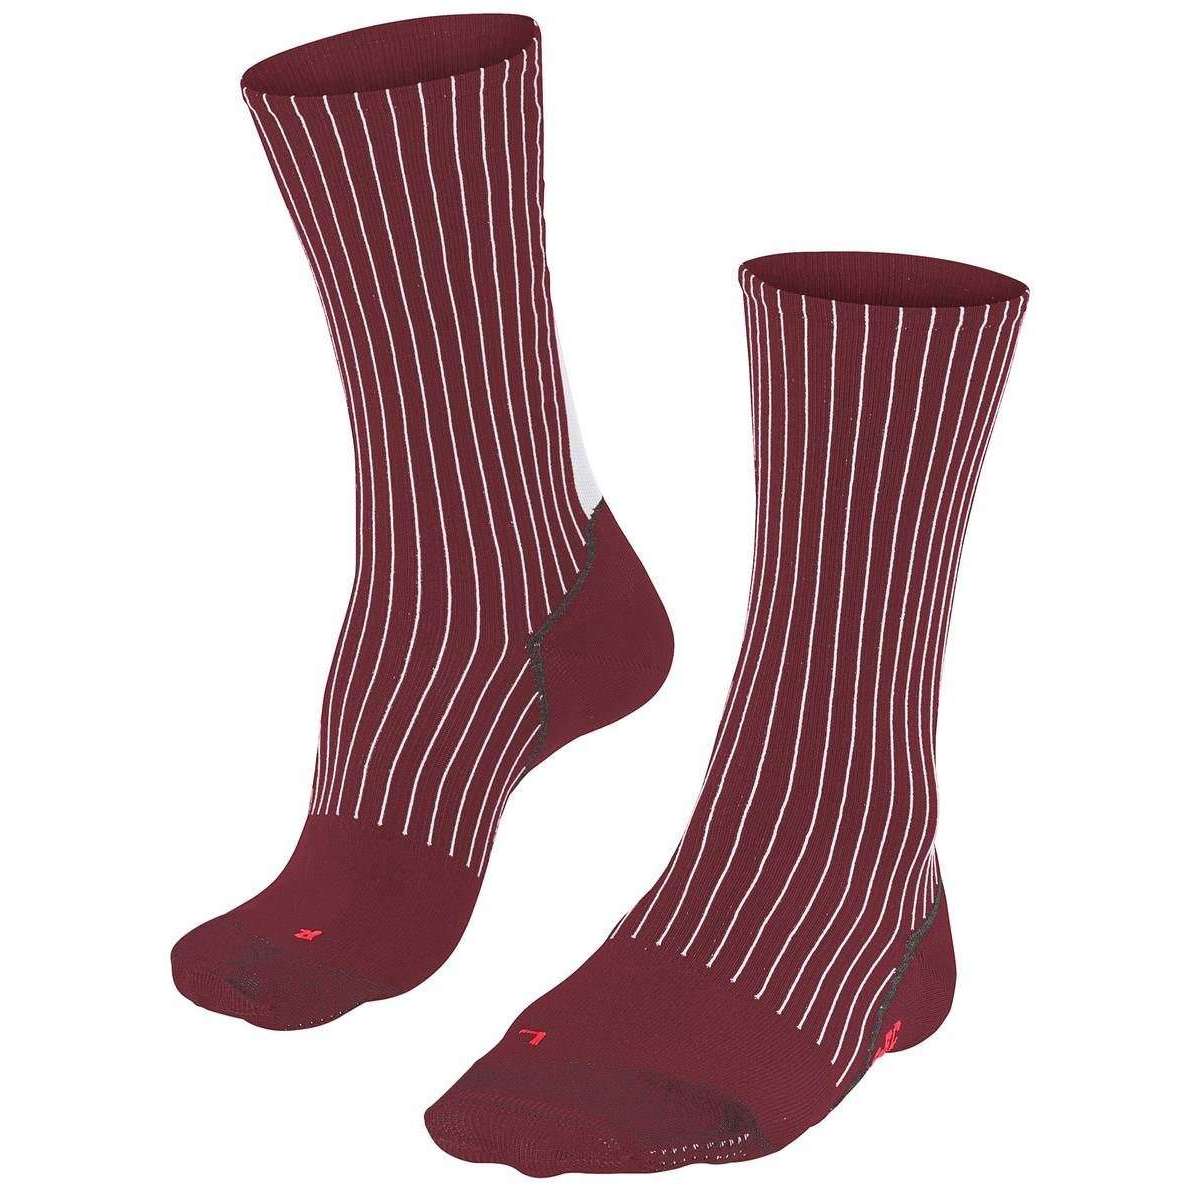 Falke BC Impulse Striped Socks - Merlot Red